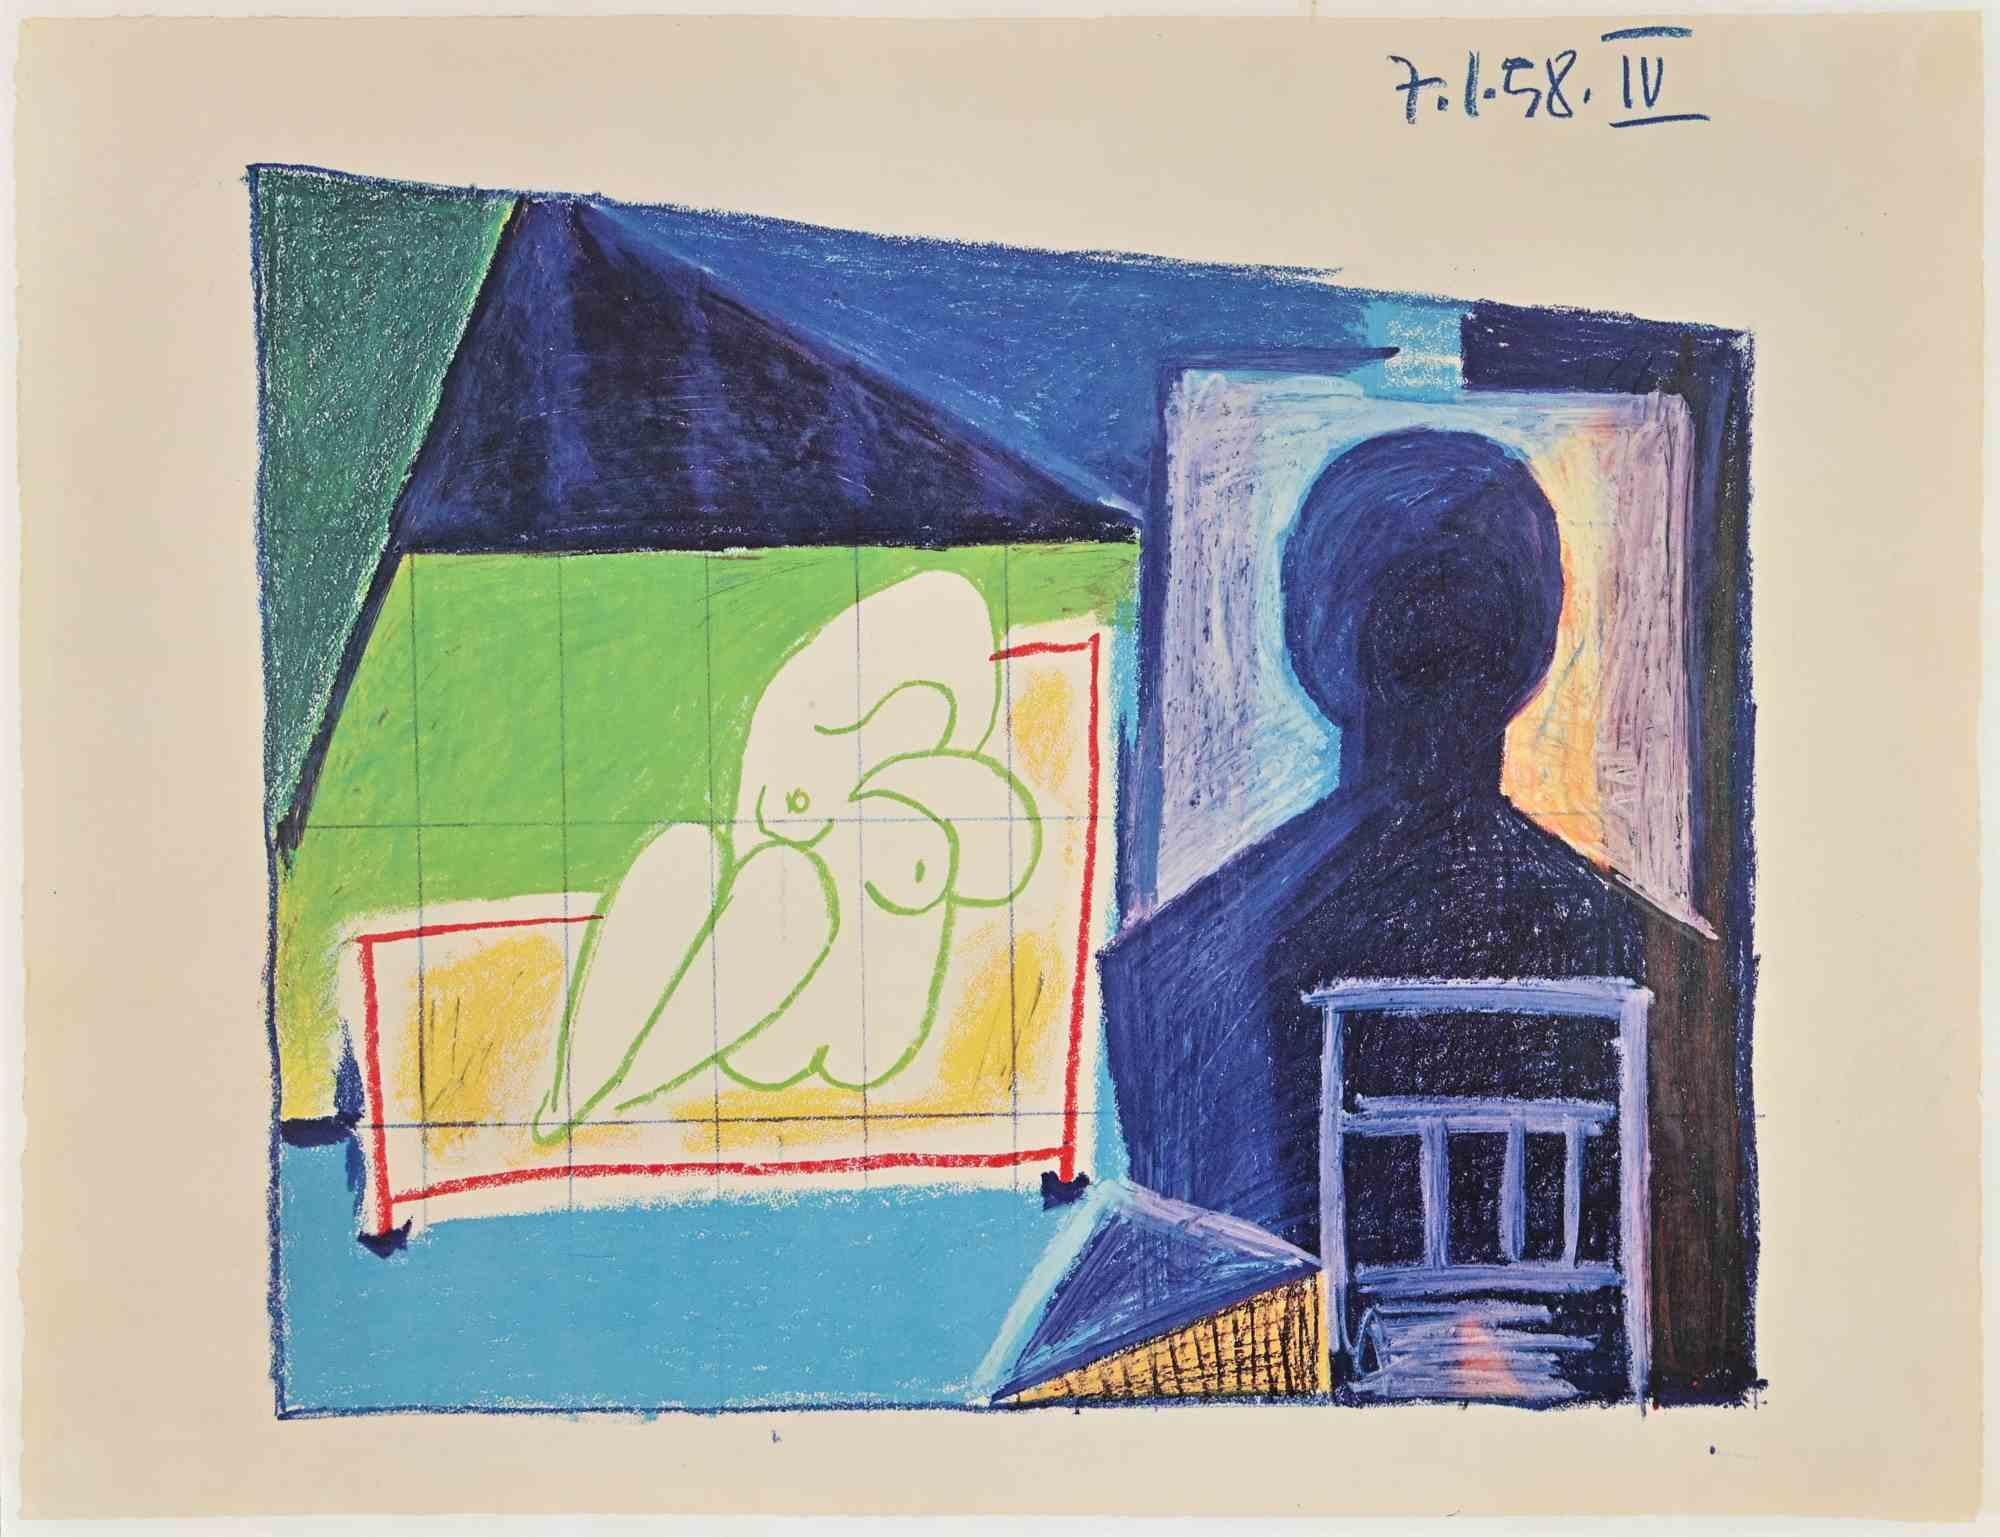 Composition cubiste est une photolithographie vintage réalisée d'après Pablo Picasso d'après le dessin original en 1959.

Signé sur la plaque.

Très bonnes conditions.

Pablo Picasso (Malaga, 1881 - Moujins, 1973) en 1973. Peintre, sculpteur,